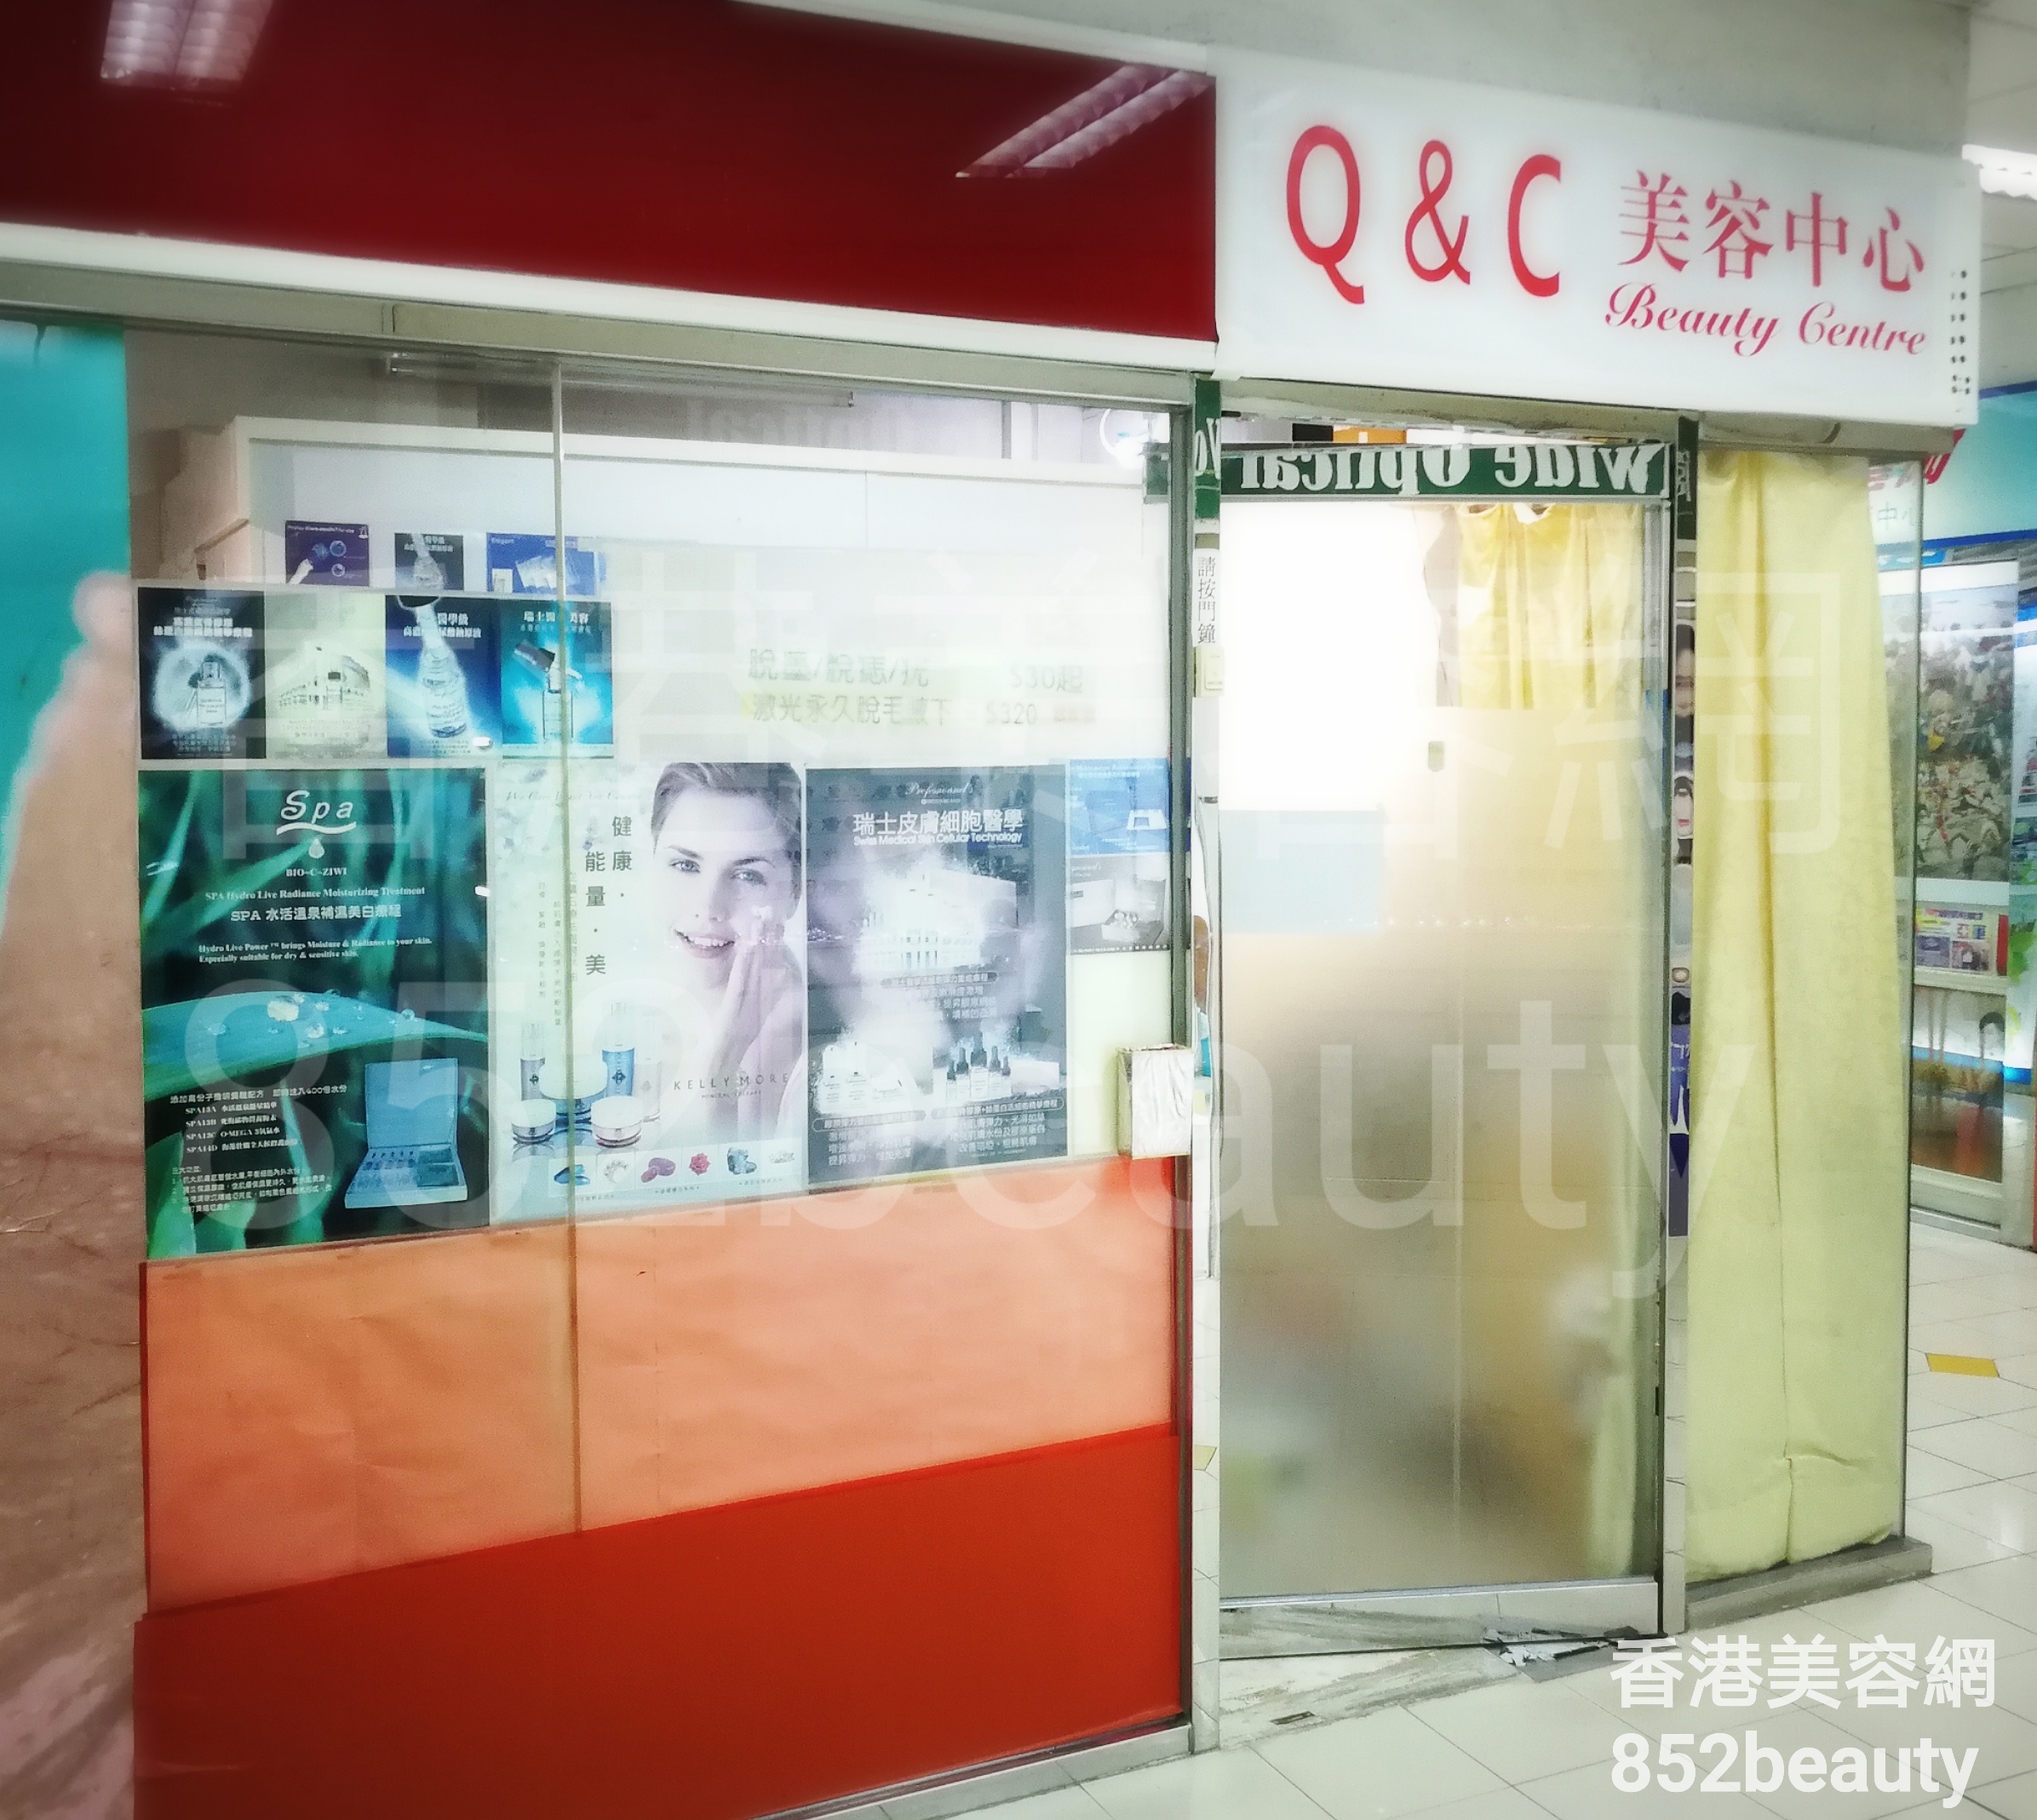 香港美容網 Hong Kong Beauty Salon 美容院 / 美容師: Q & C 美容中心